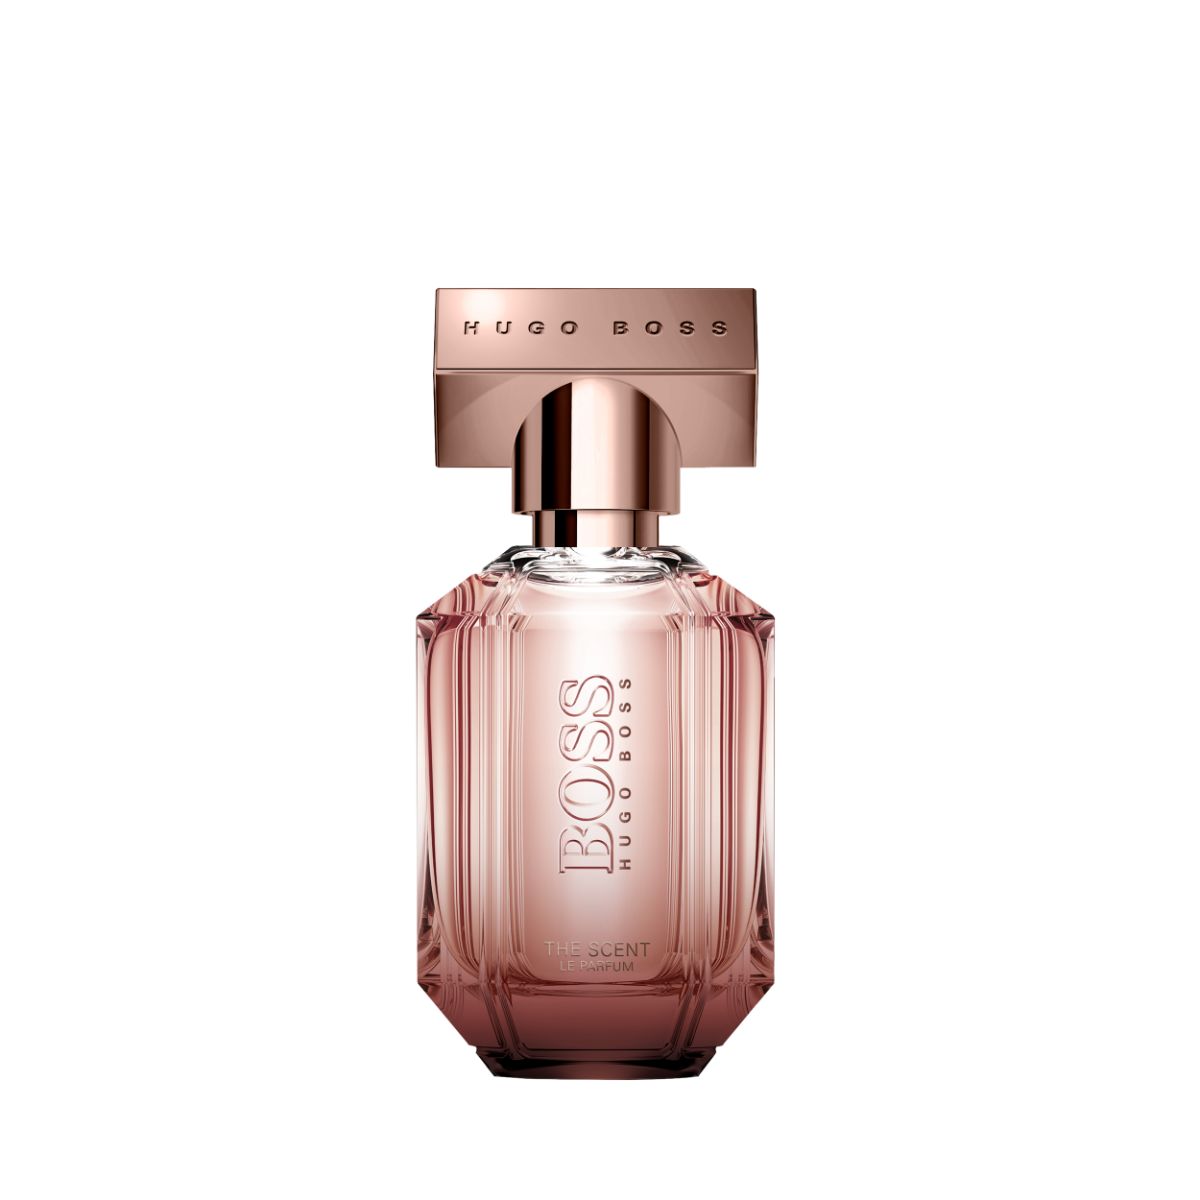 Hugo Boss The Scent Le Parfum (100ml / woman) - Divine Scent